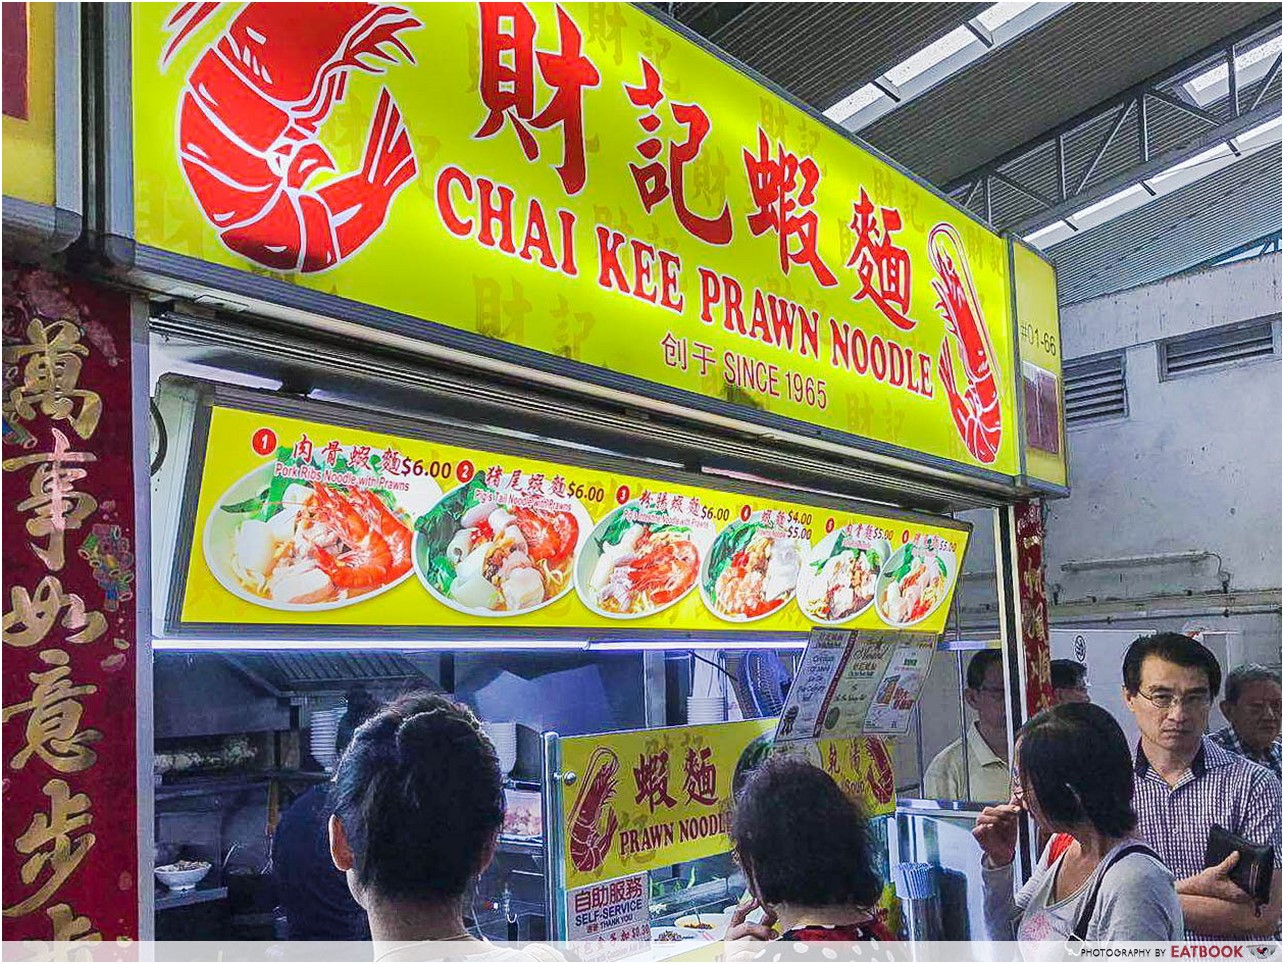 Kovan market - chai kee prawn noodles